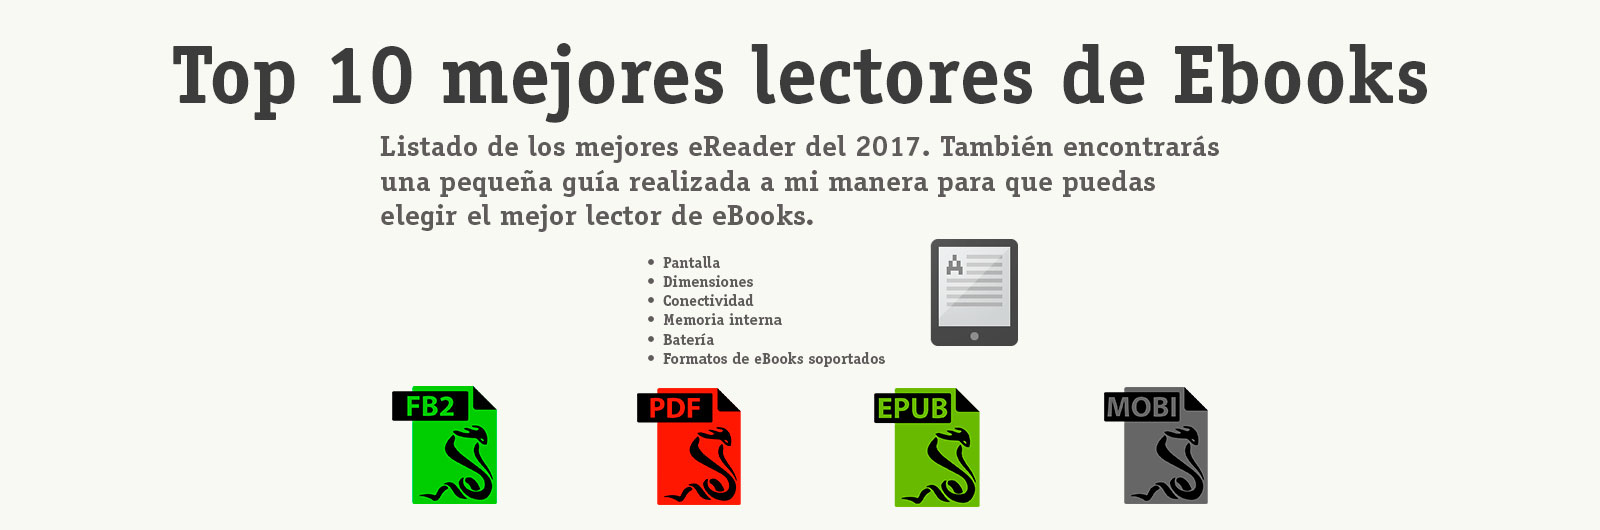 mejores-lectores-de-eBooks-2017-ESPAÑA